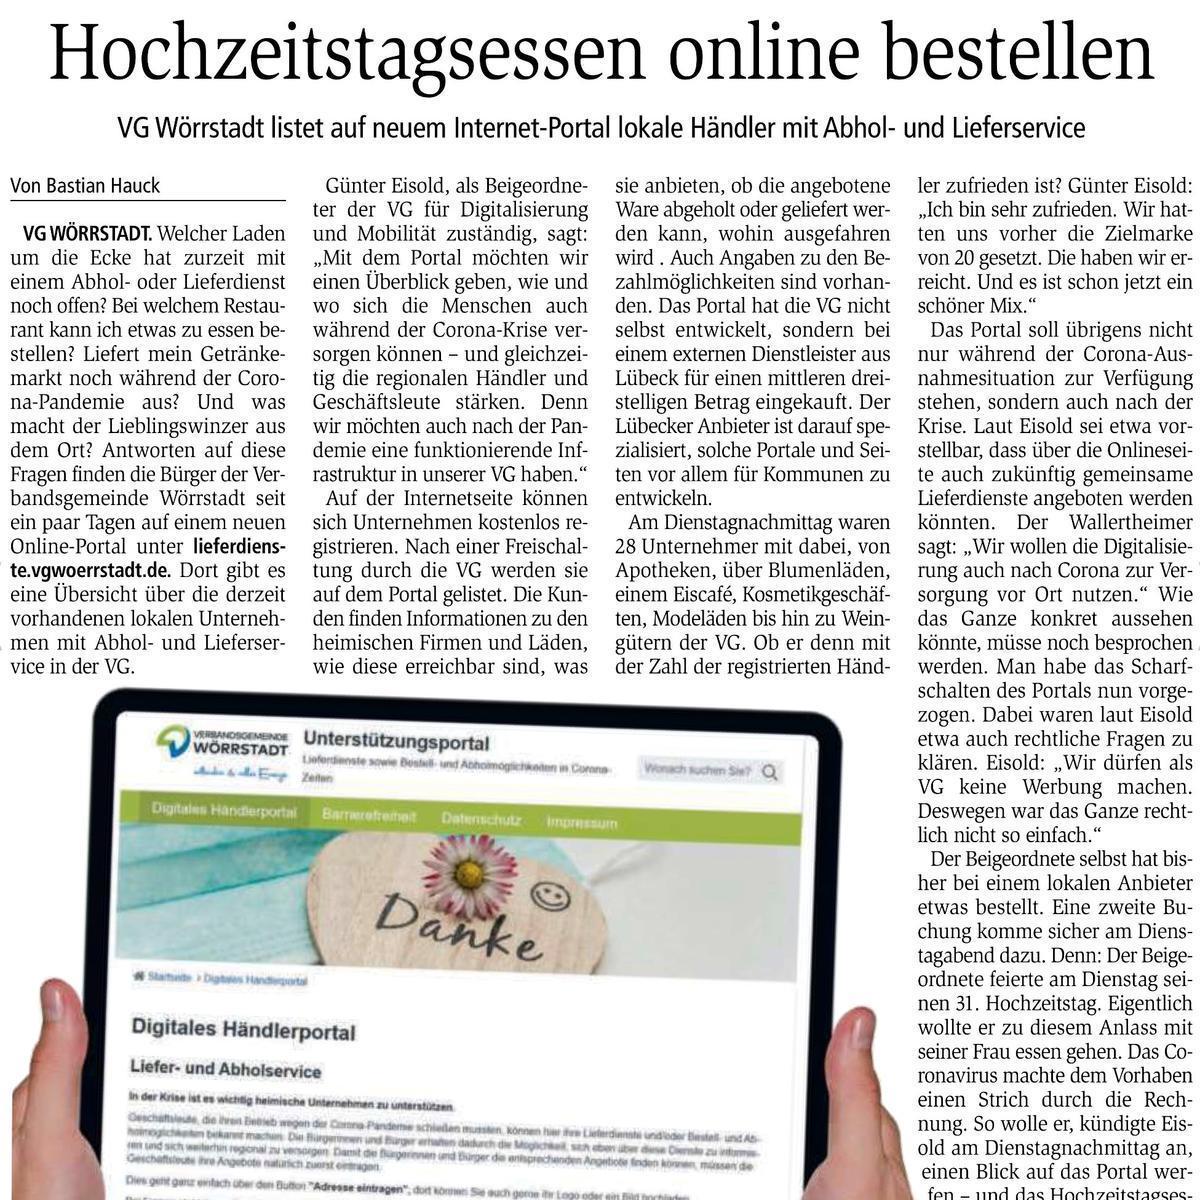 Bericht über das Digitale Händlerportal in der VG Wörrstadt